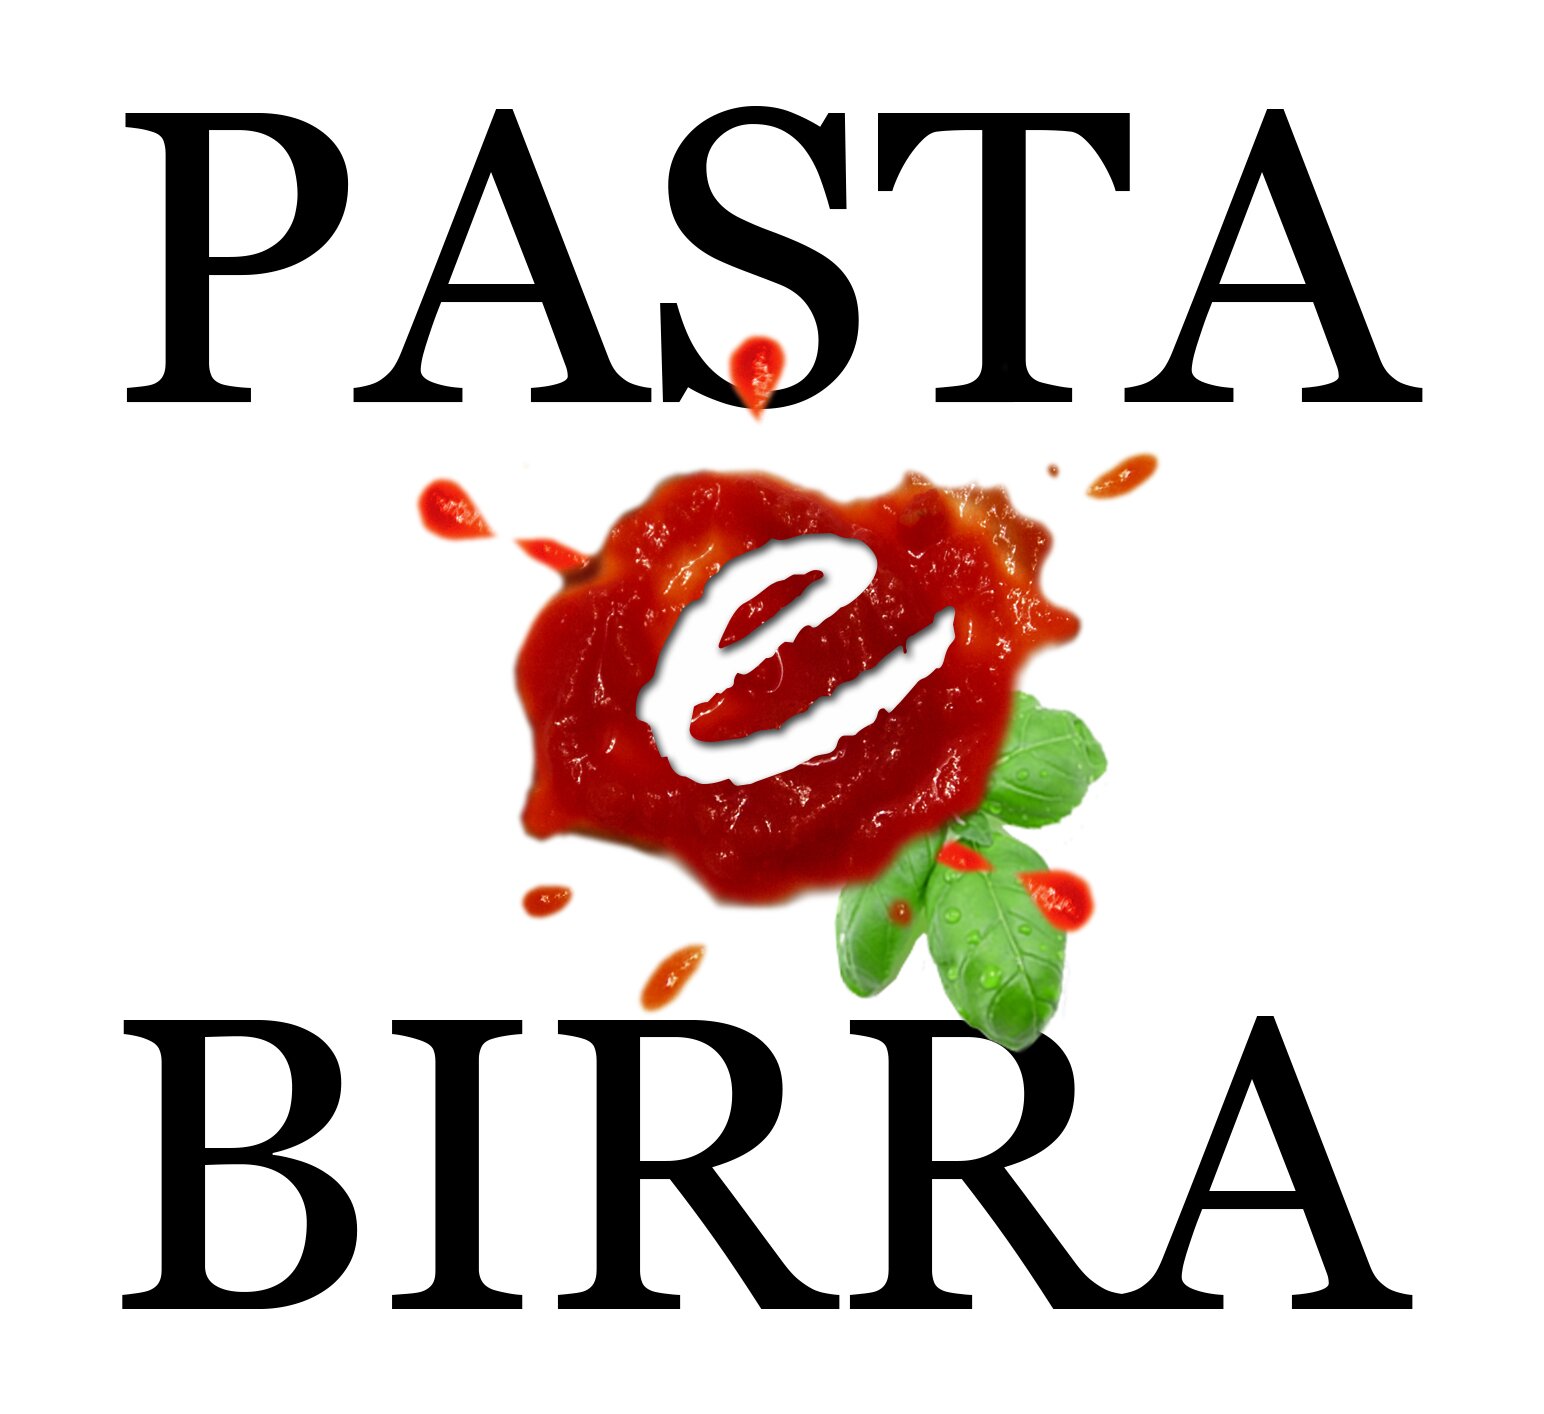 Pasta e Birra es un restaurante Italiano donde encontrarás las mejores pastas y buena cerveza, todo servido de manera muy rápida!